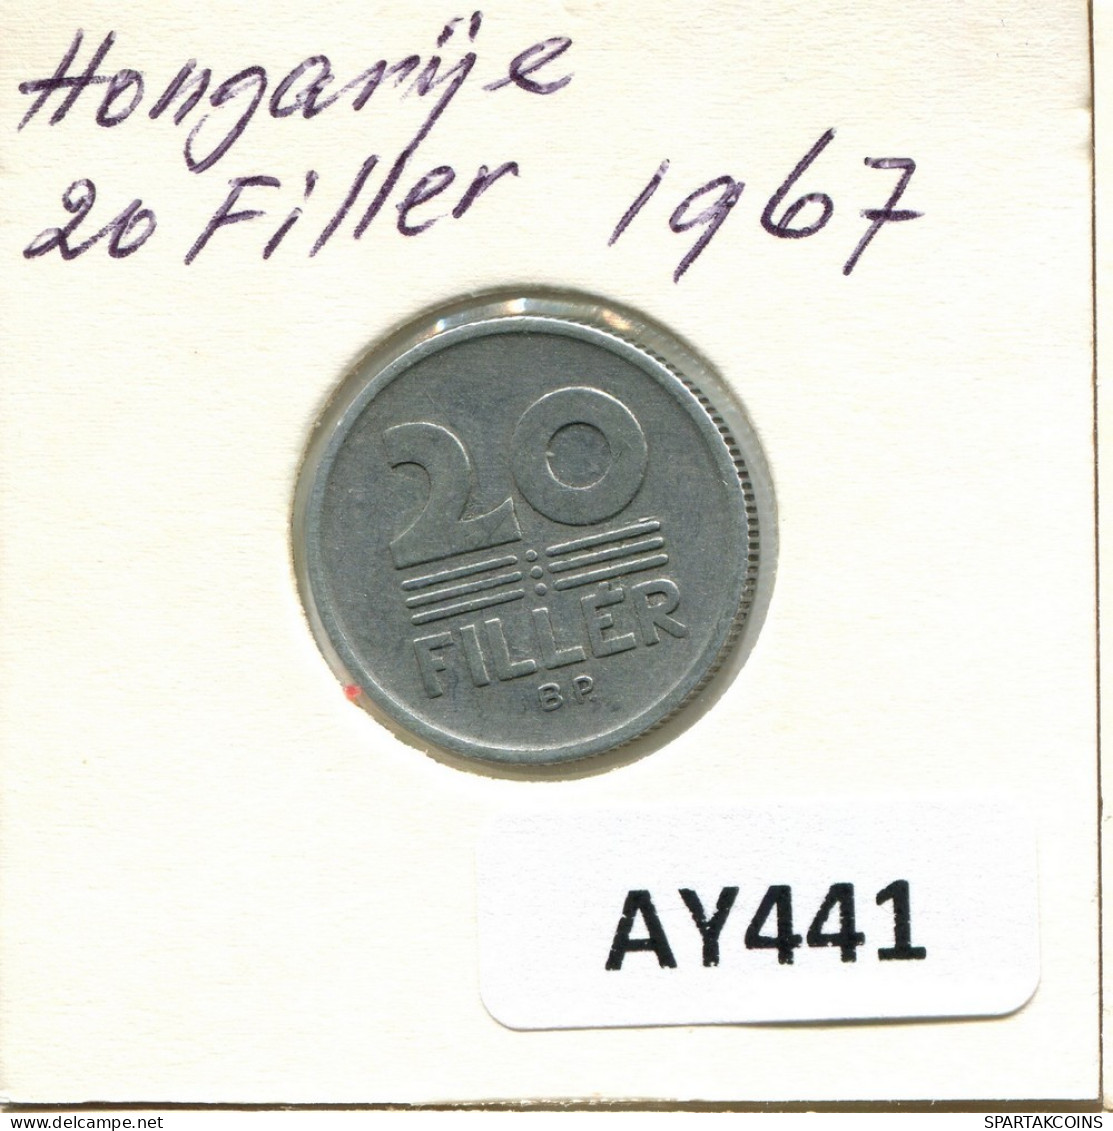 20 FILLER 1967 SIEBENBÜRGEN HUNGARY Münze #AY441.D.A - Ungheria